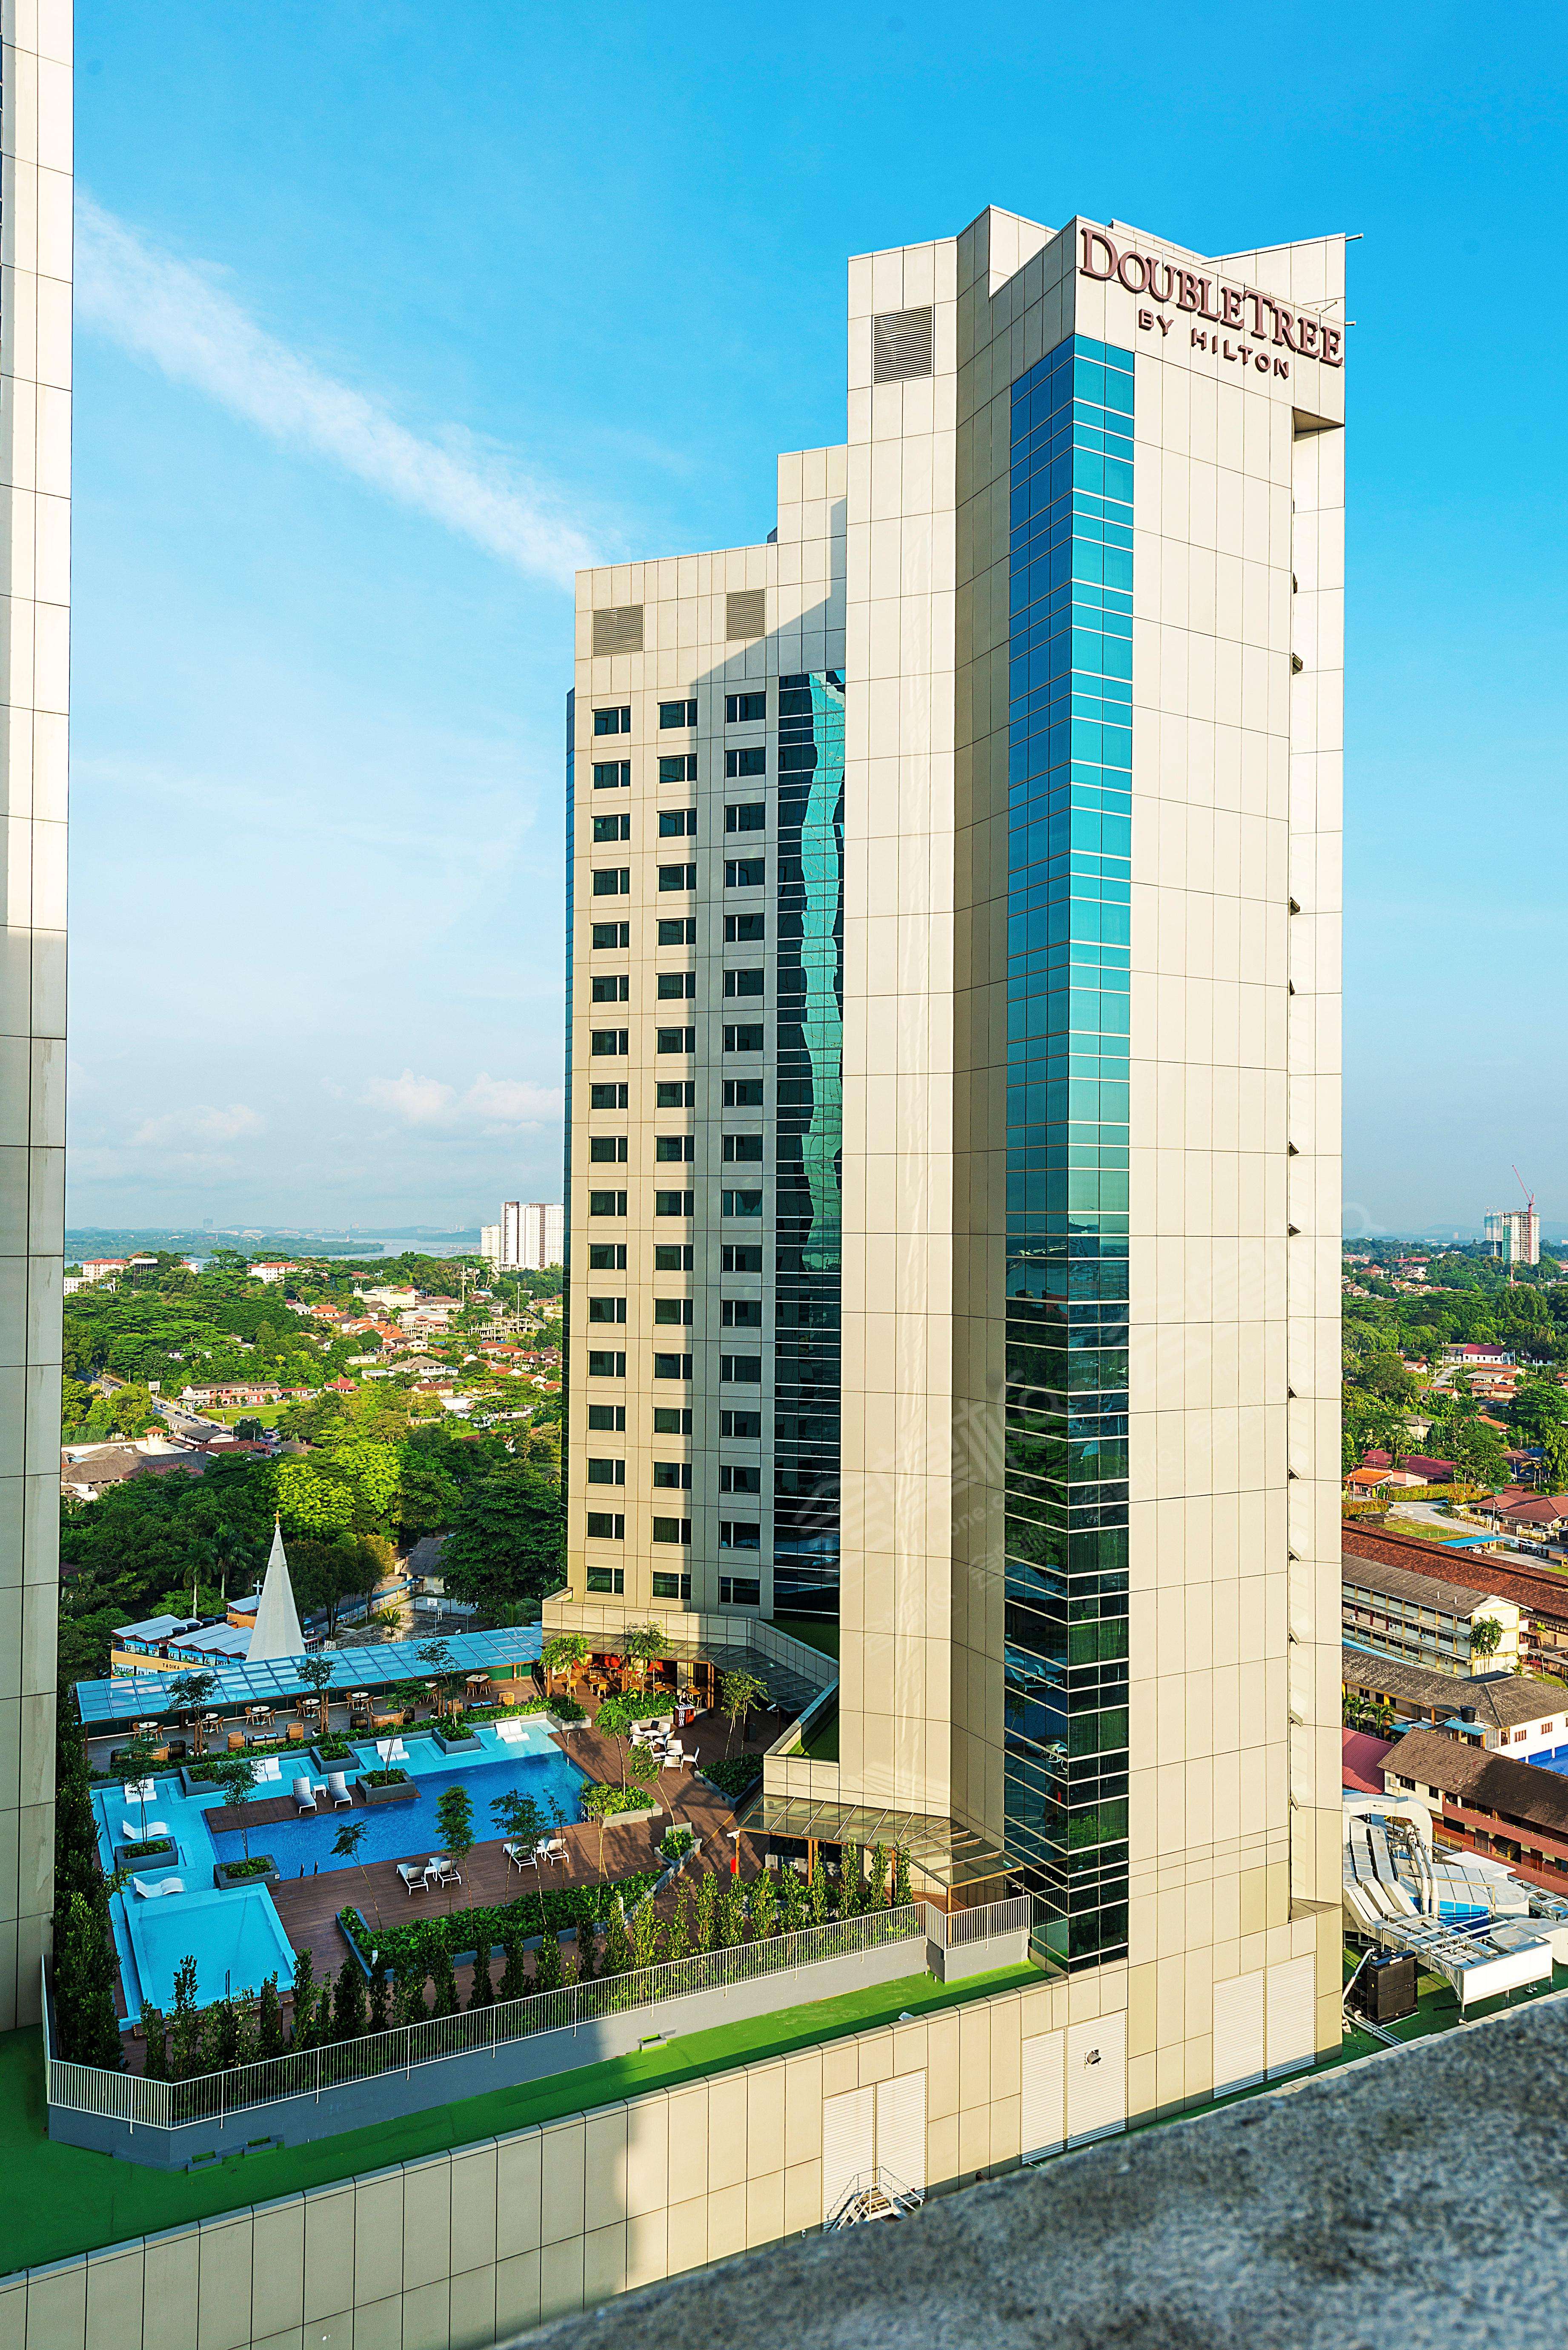 新山四星级酒店最大容纳200人的会议场地|希尔顿逸林酒店- 柔佛- 新山(DoubleTree by Hilton Hotel Johor Bahru)的价格与联系方式